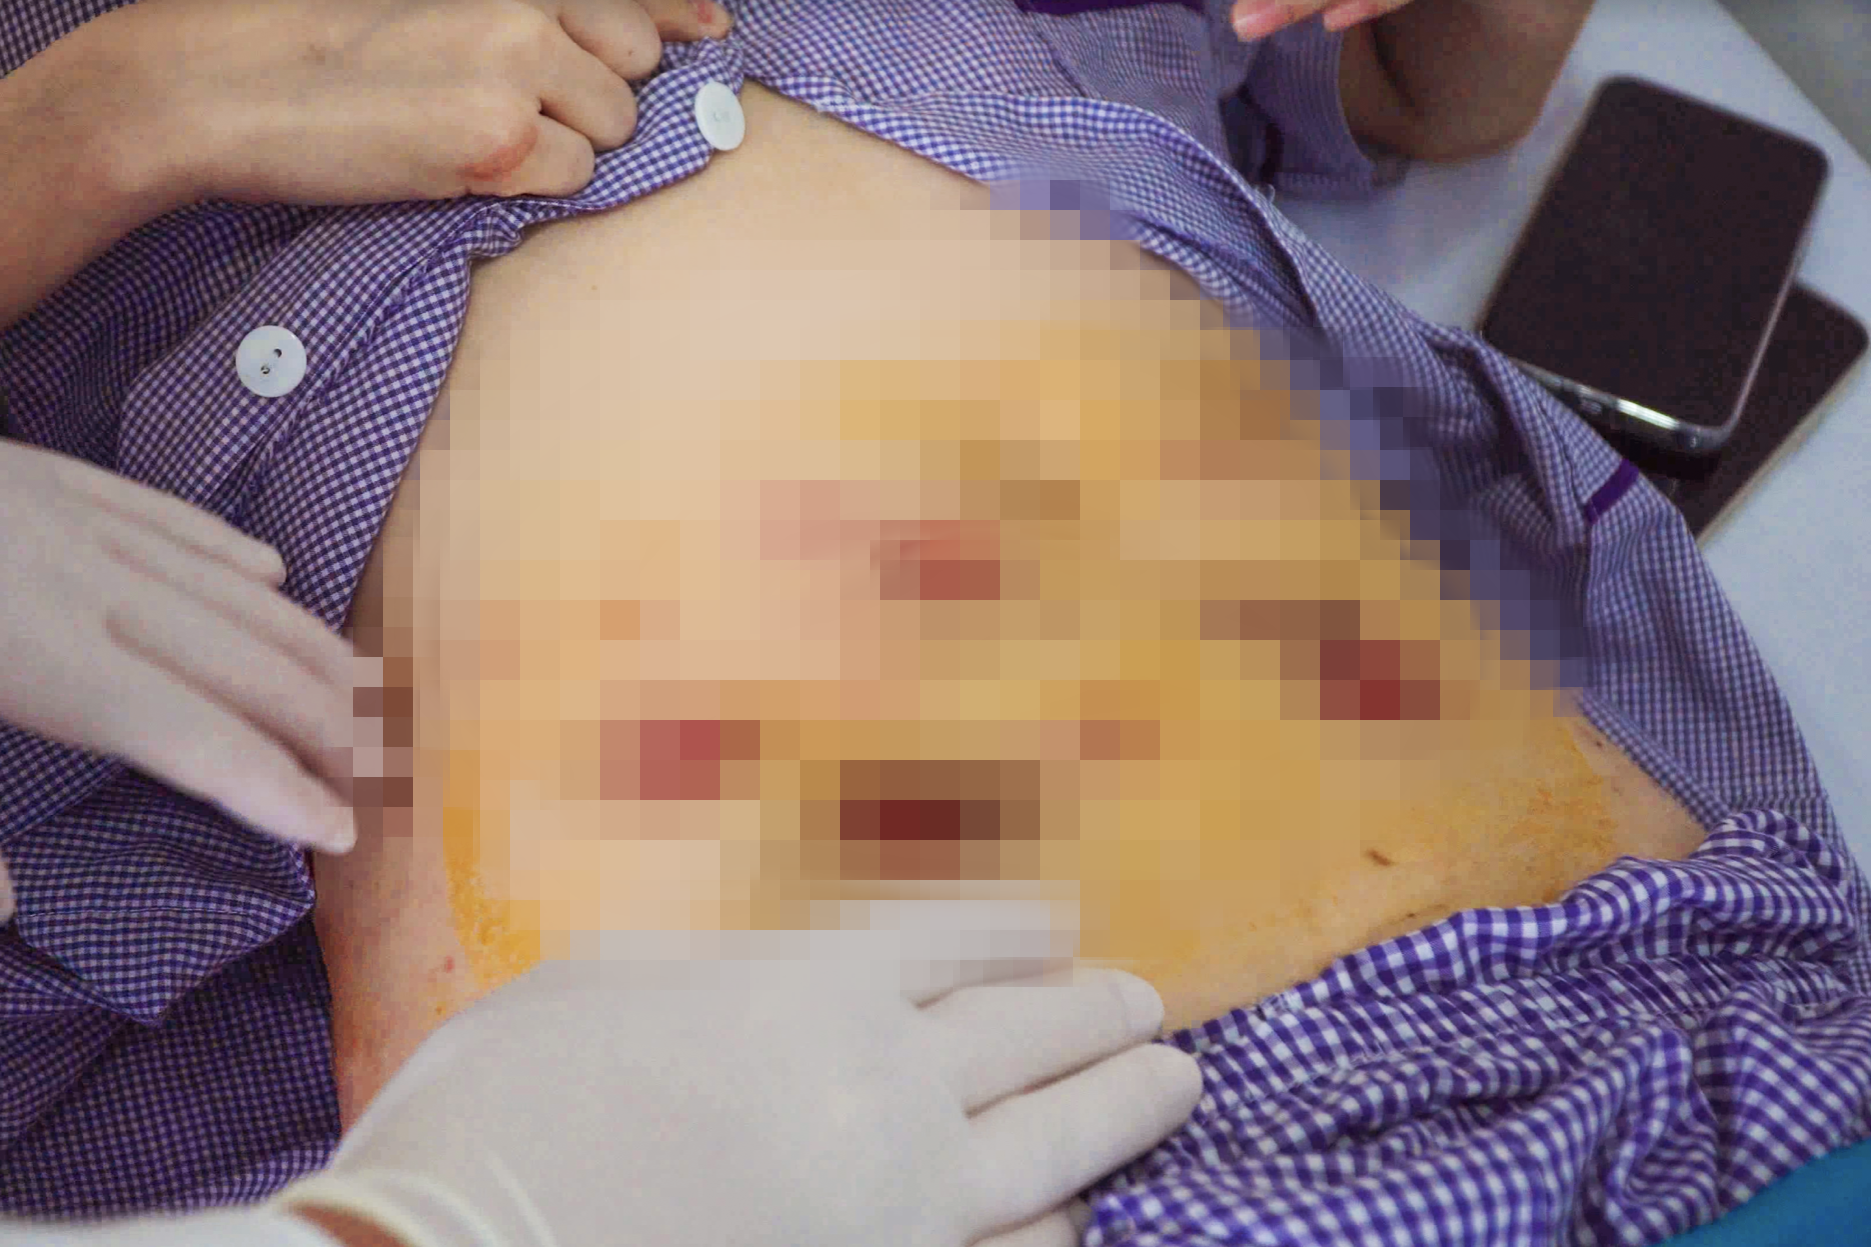 Qua Campuchia tiêm tan mỡ làm đẹp, cô gái bị khoét hàng chục lỗ trên bụng - 1